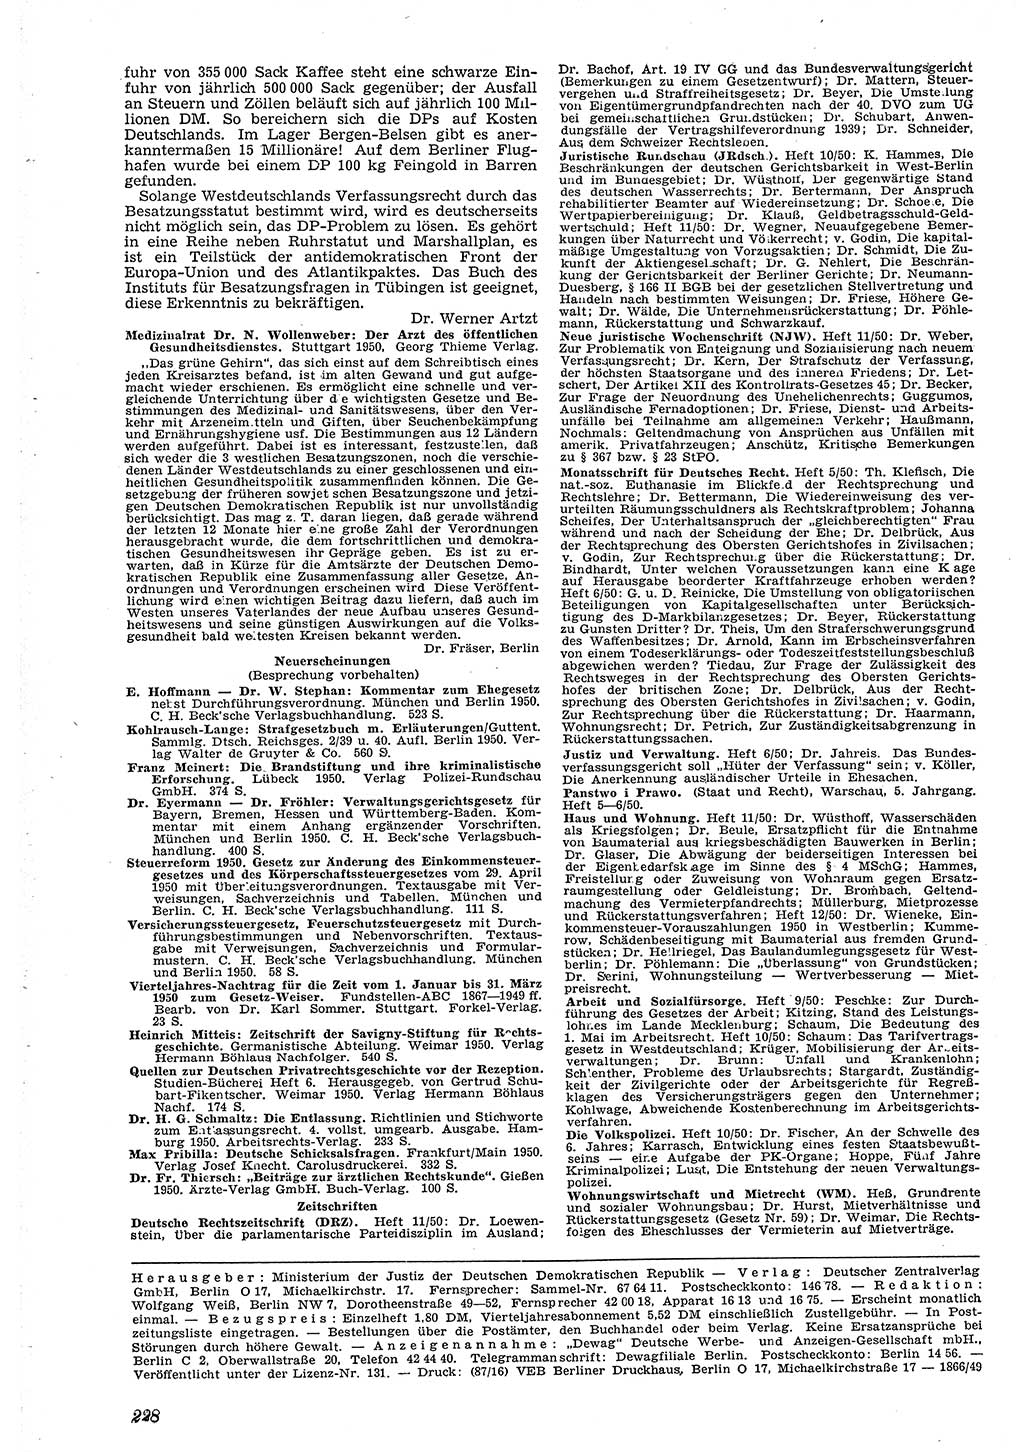 Neue Justiz (NJ), Zeitschrift für Recht und Rechtswissenschaft [Deutsche Demokratische Republik (DDR)], 4. Jahrgang 1950, Seite 228 (NJ DDR 1950, S. 228)